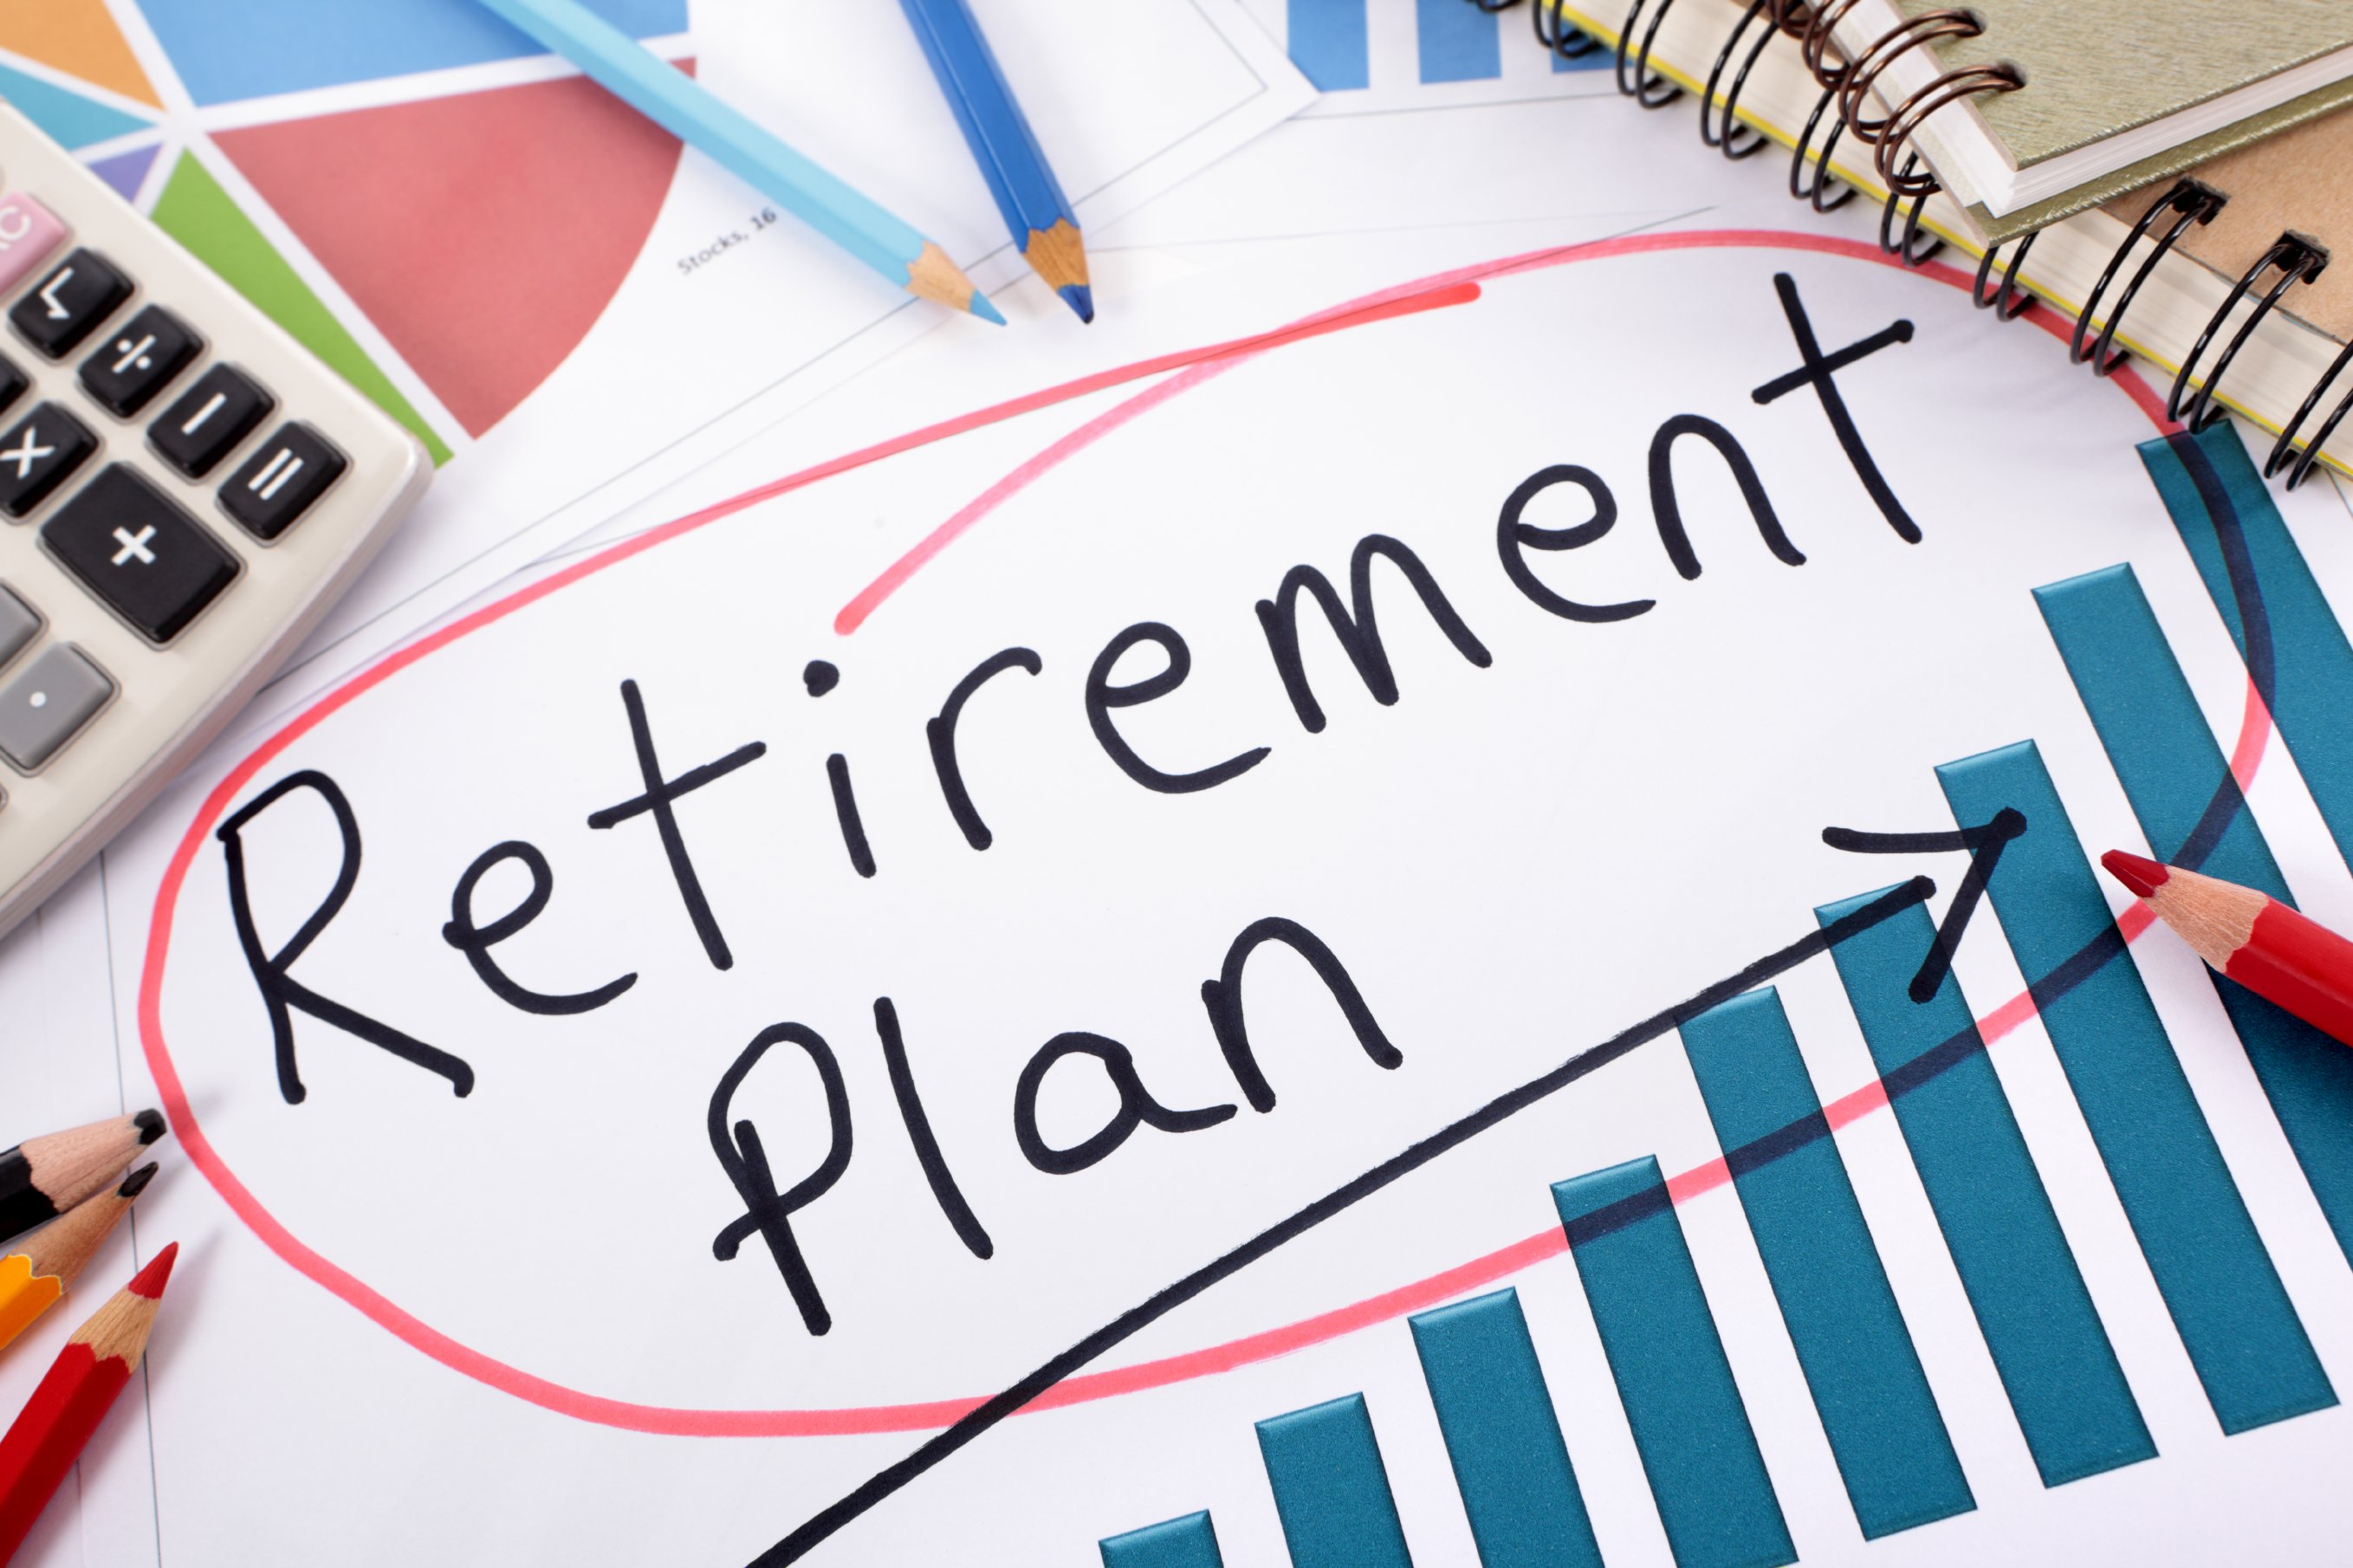 retirement plan clipart